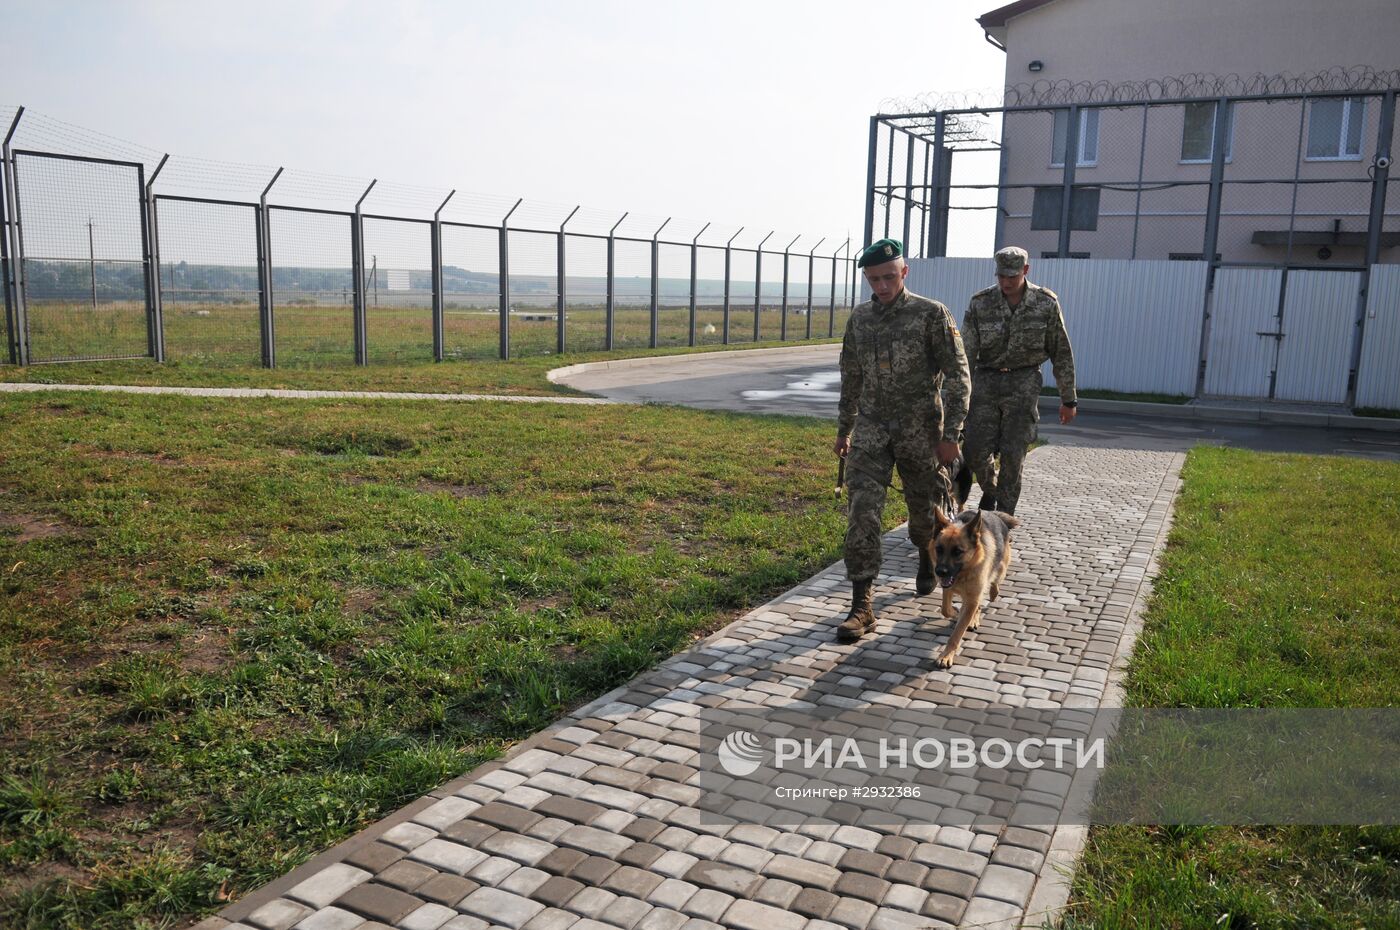 На украинско-польской границе открыли обновленный отдел пограничной службы "Павловичи".